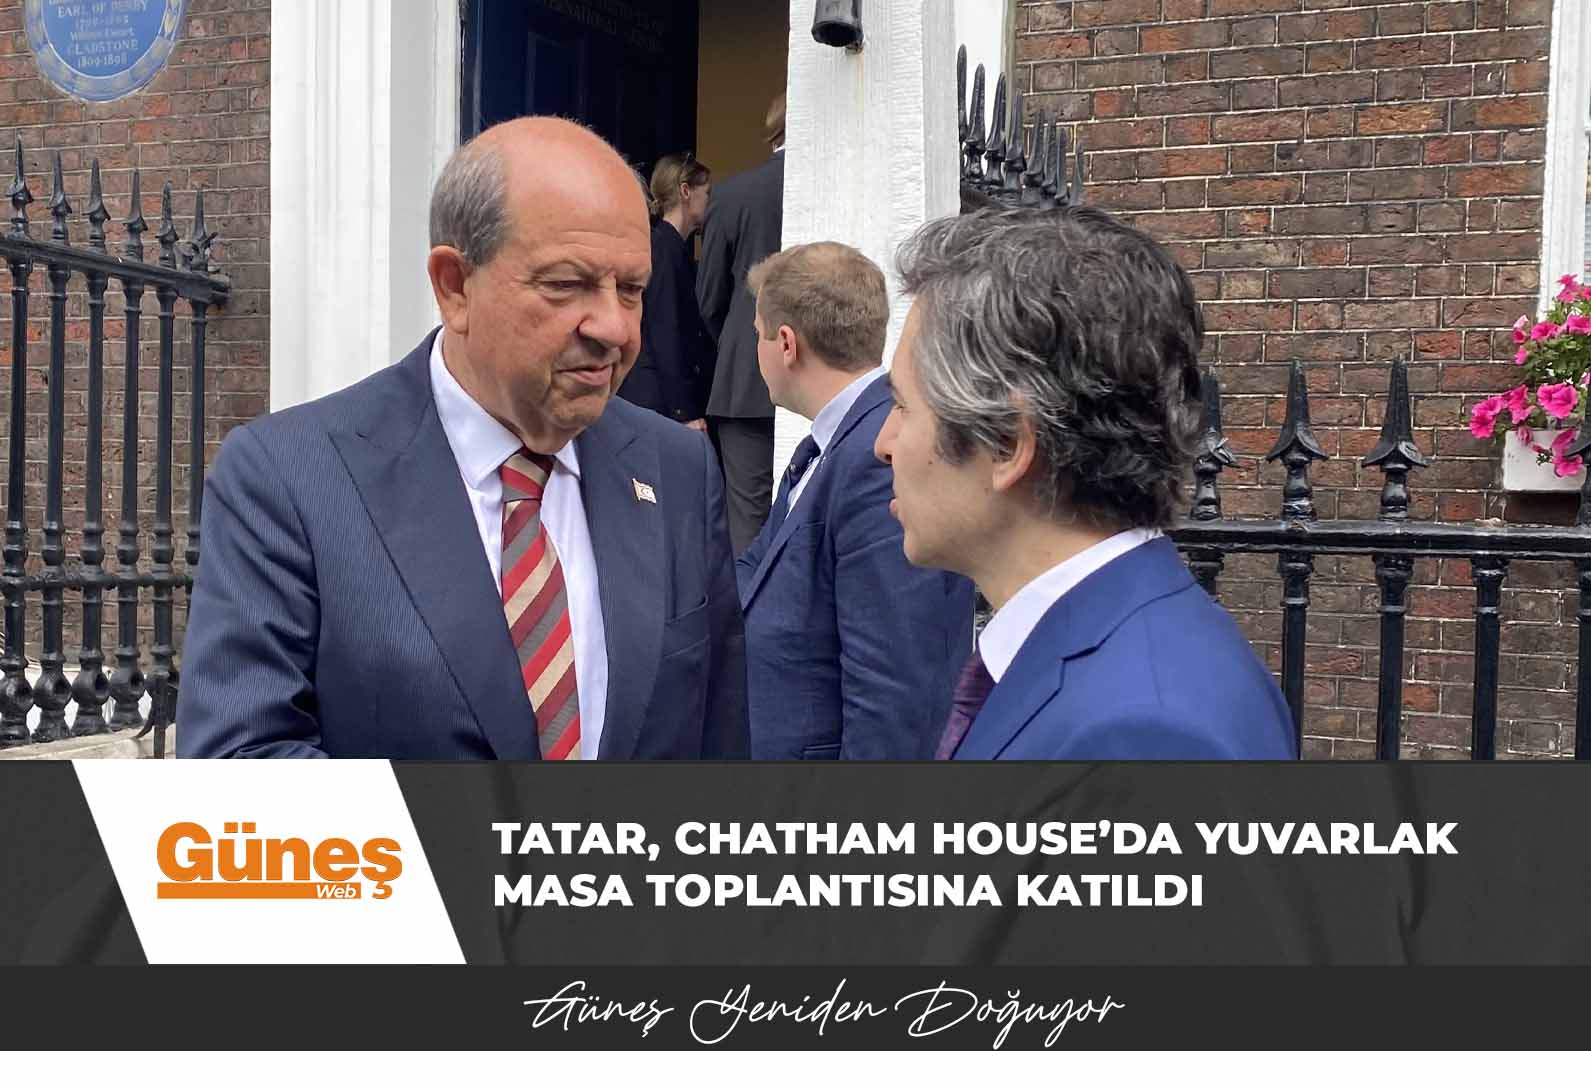 Cumhurbaşkanı Tatar, Chatham House’da yuvarlak masa toplantısına katıldı